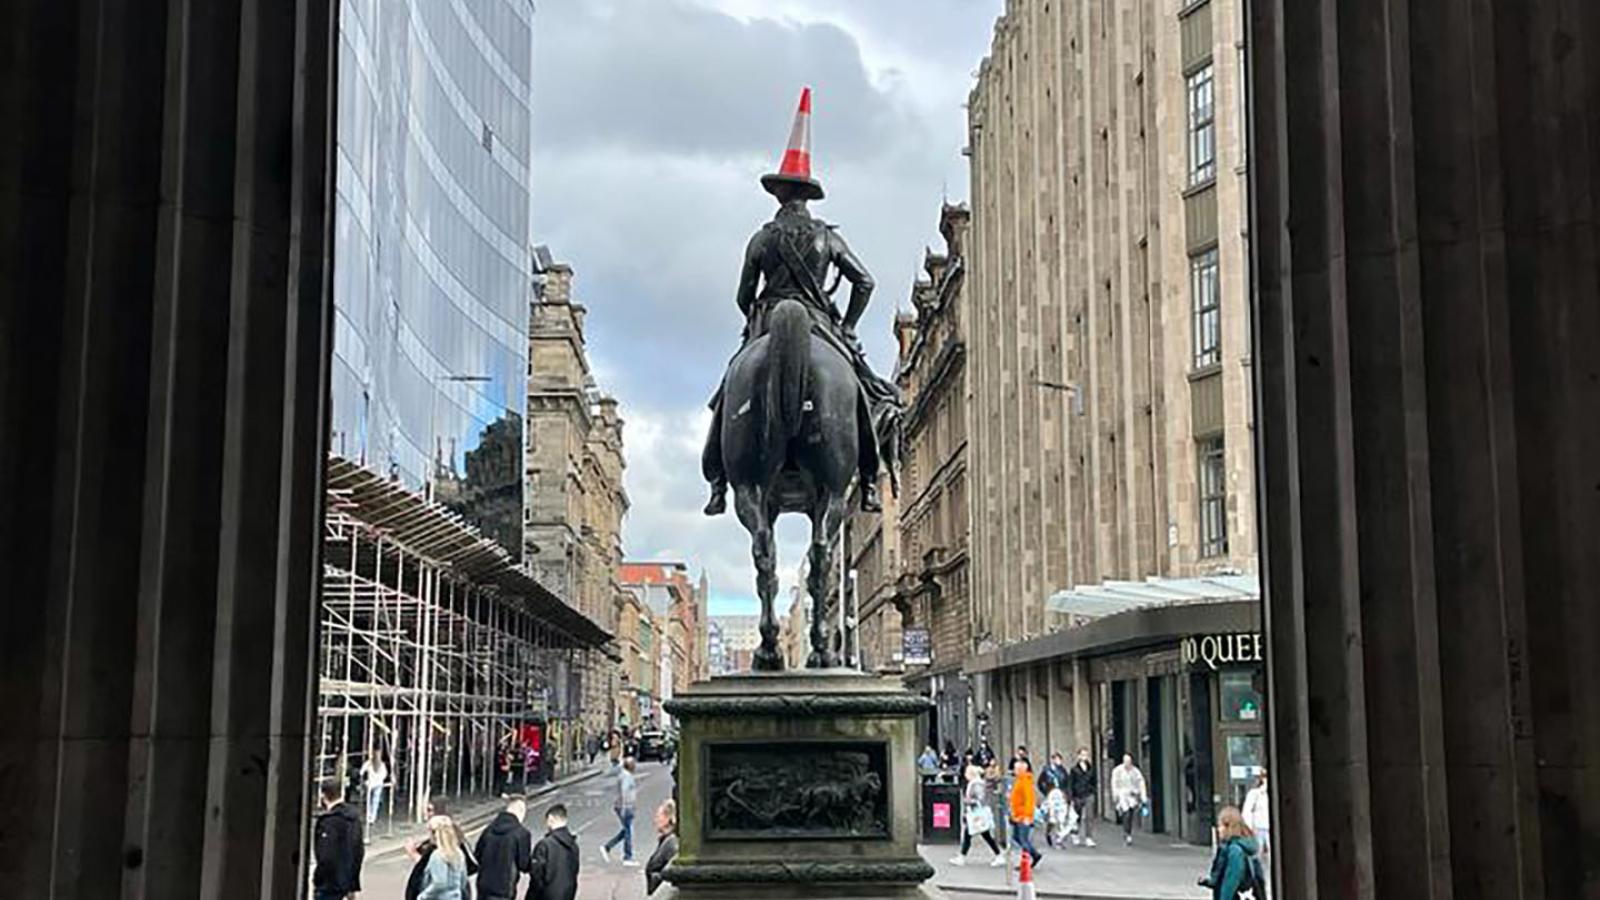 Der Blick fhrt aus dem Eingang des Gallery of Modern Art Glasgow heraus auf eine Statue auf einem Pferd die man von hinten sieht. Auf dem Kopf der Figur ist ein Verkehrskegel balanciert.